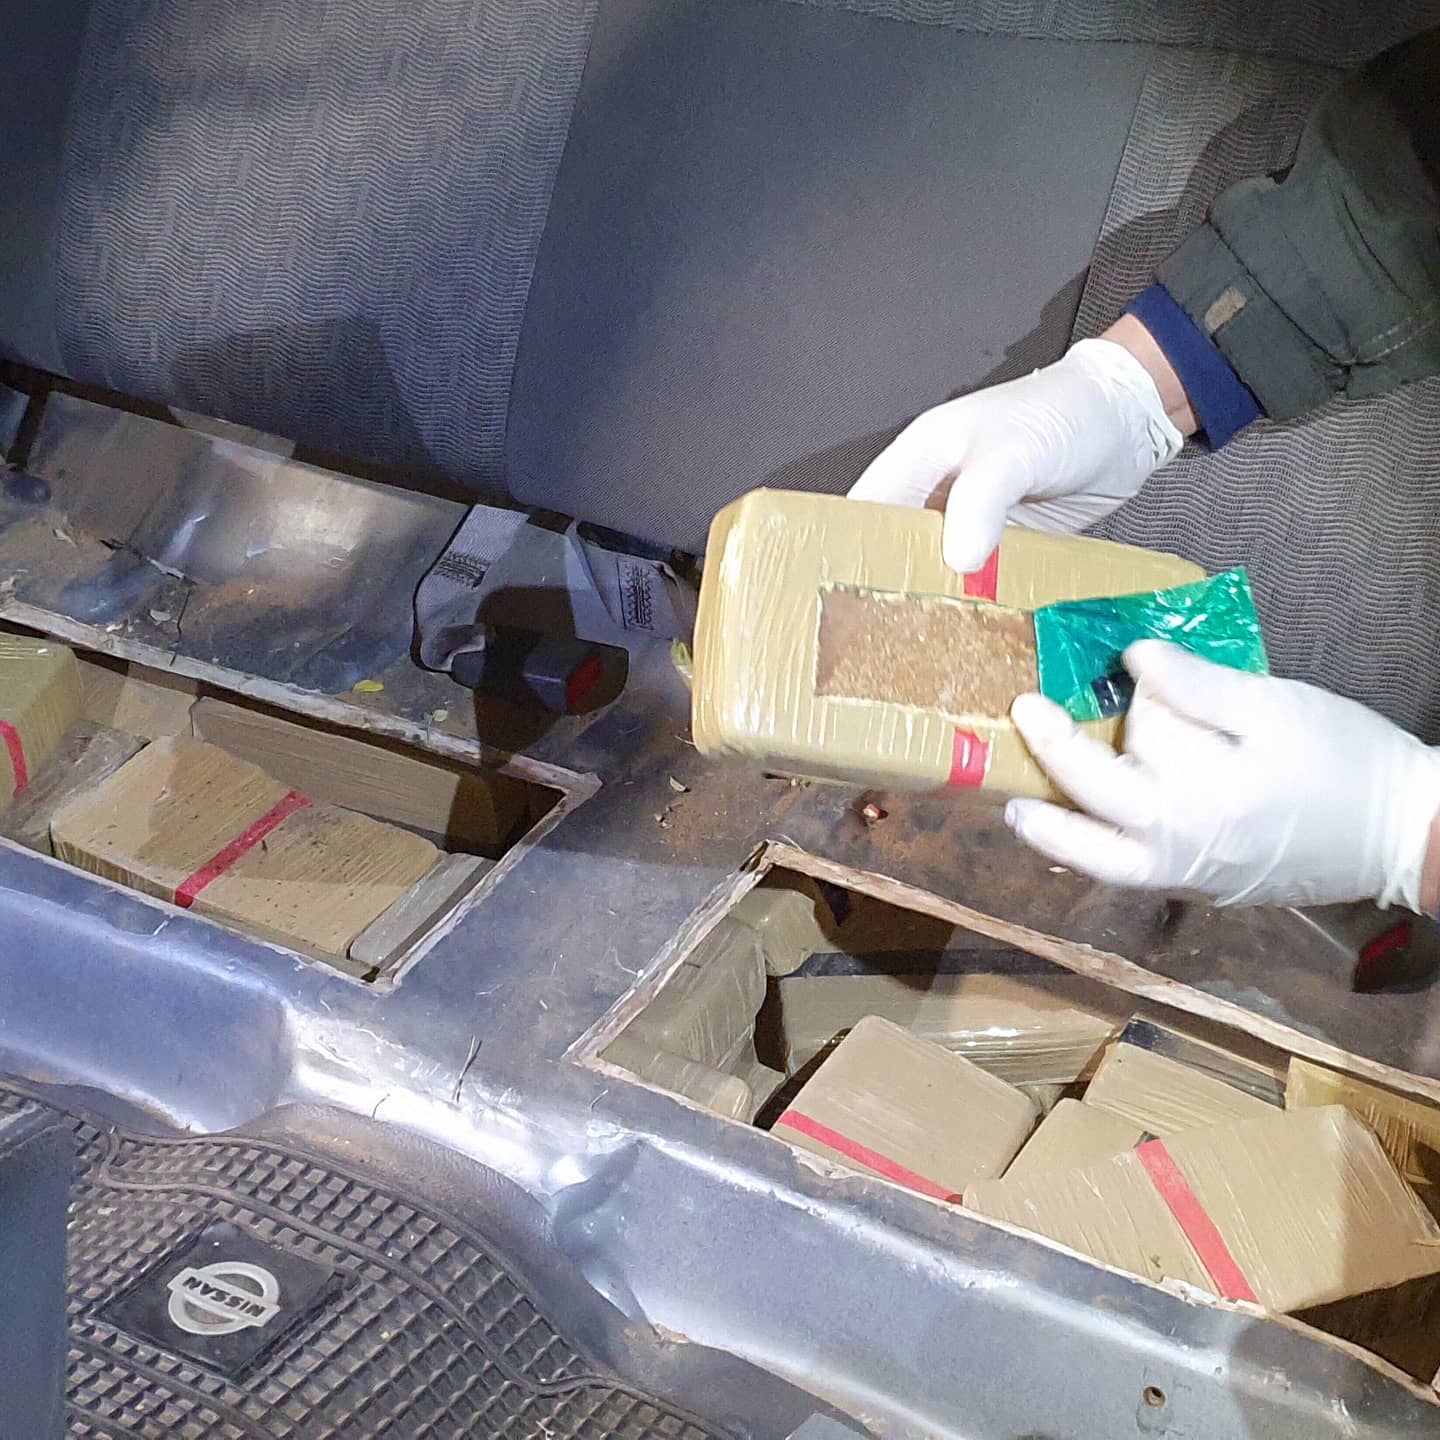 La droga se encontraba oculta en un doble fondo ubicado en el asiento trasero de la camioneta. Foto: SENAD